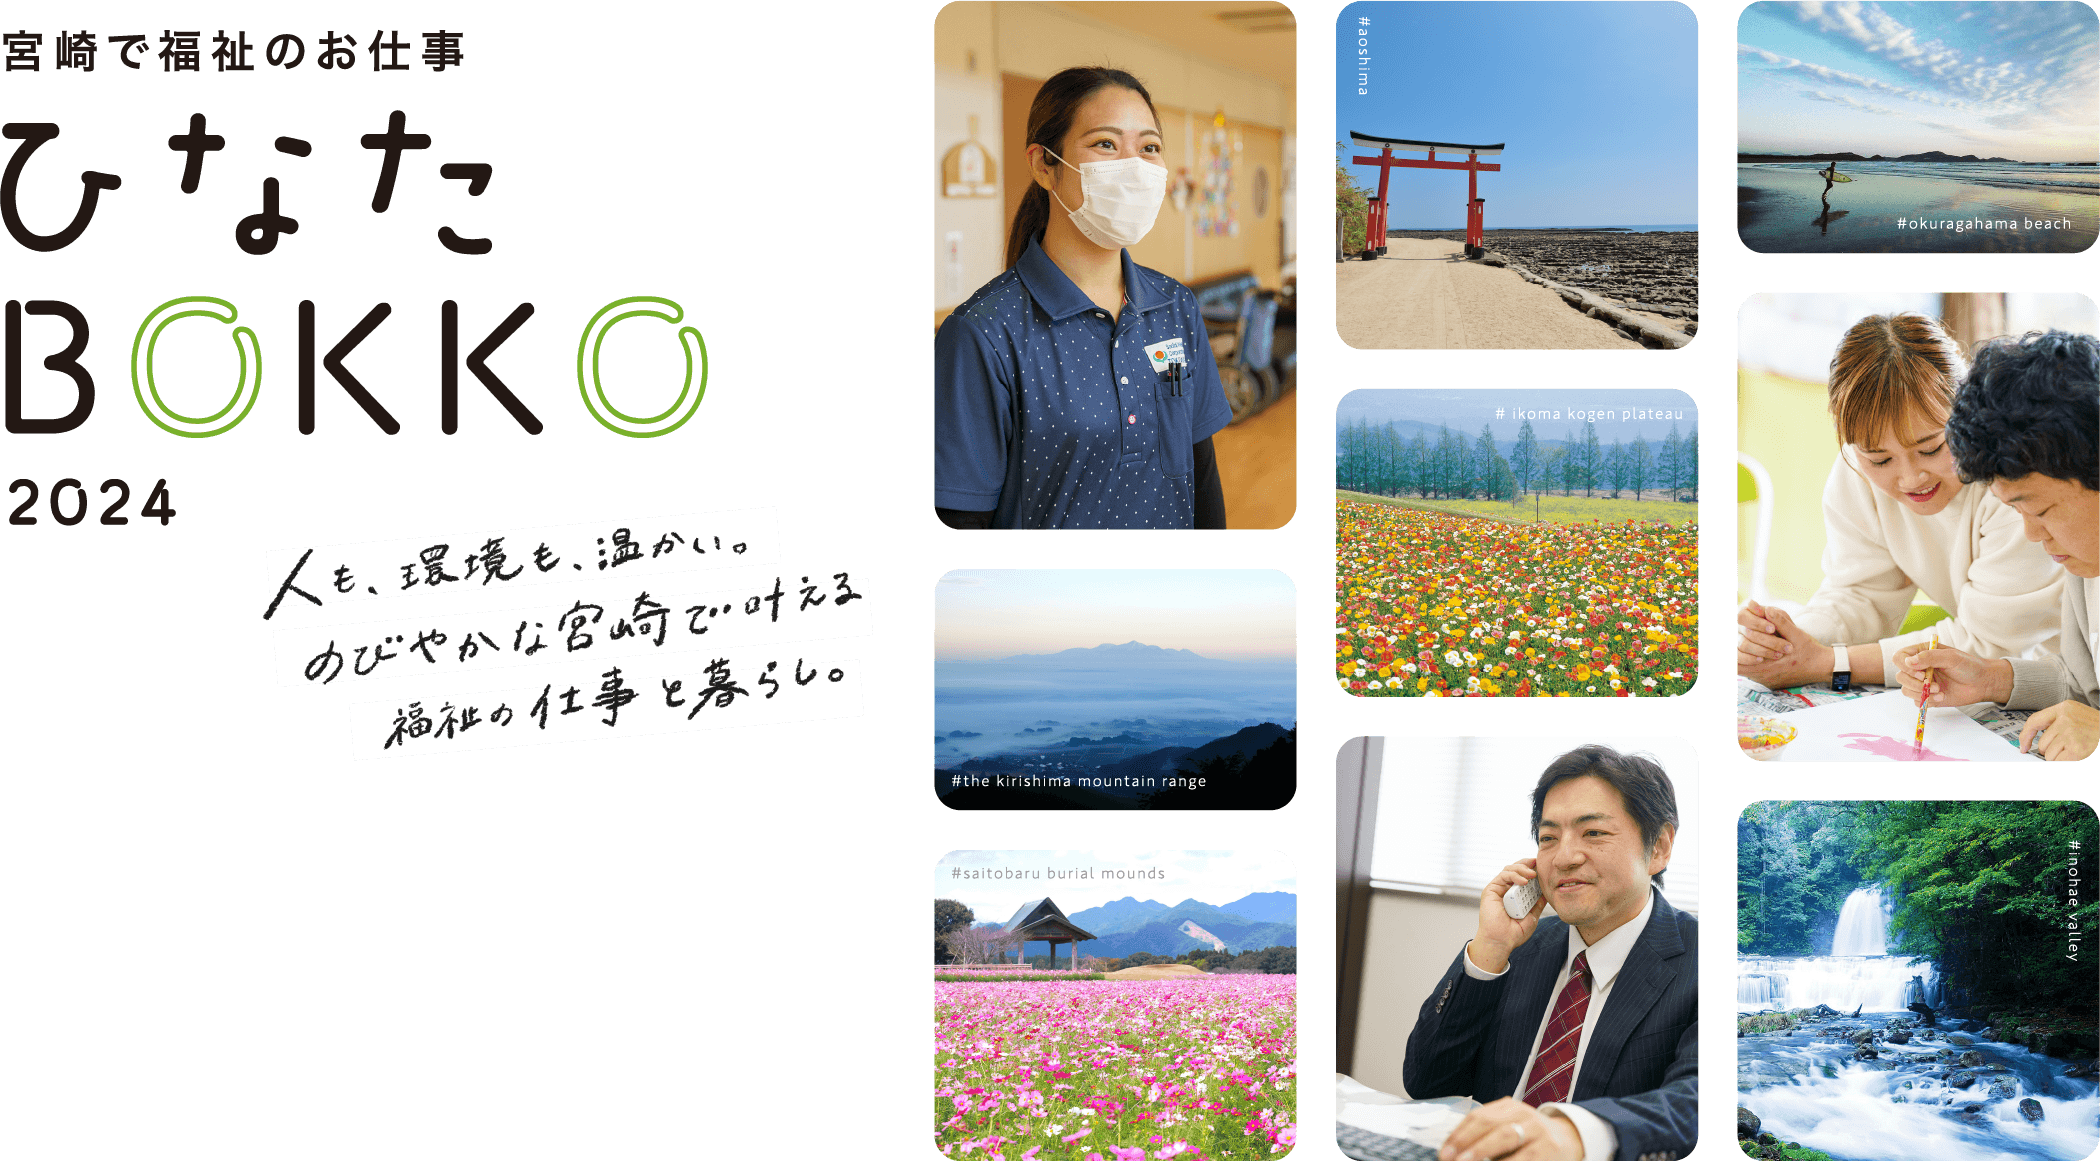 宮崎で福祉のお仕事ひなたBOKKO2023　福祉の仕事と、のびやかな生活のグッドバランス。